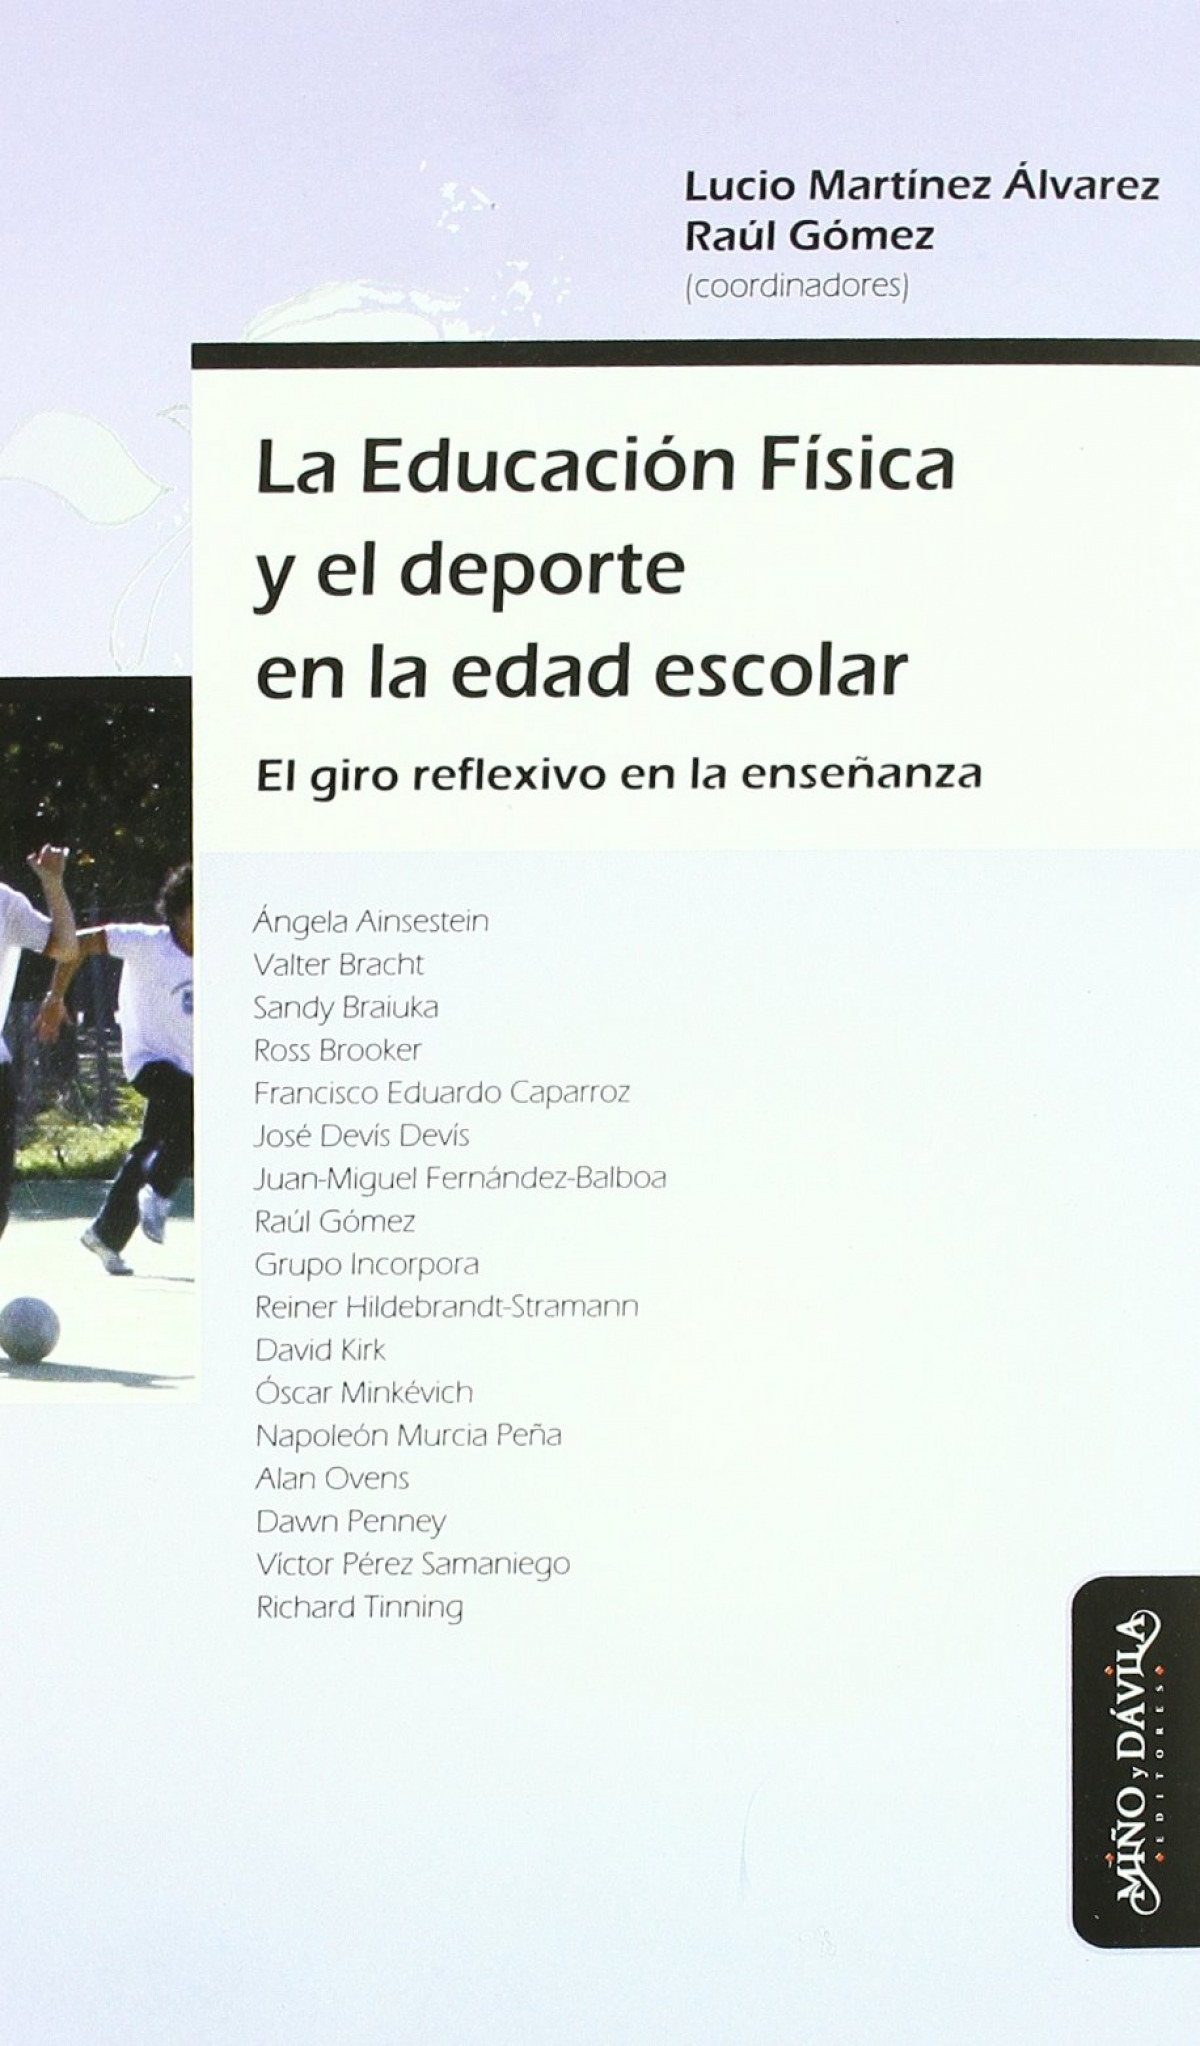 La educación física y el deporte en la edad escolar - Raúl Gómez/ Lucio Martínez Álvarez